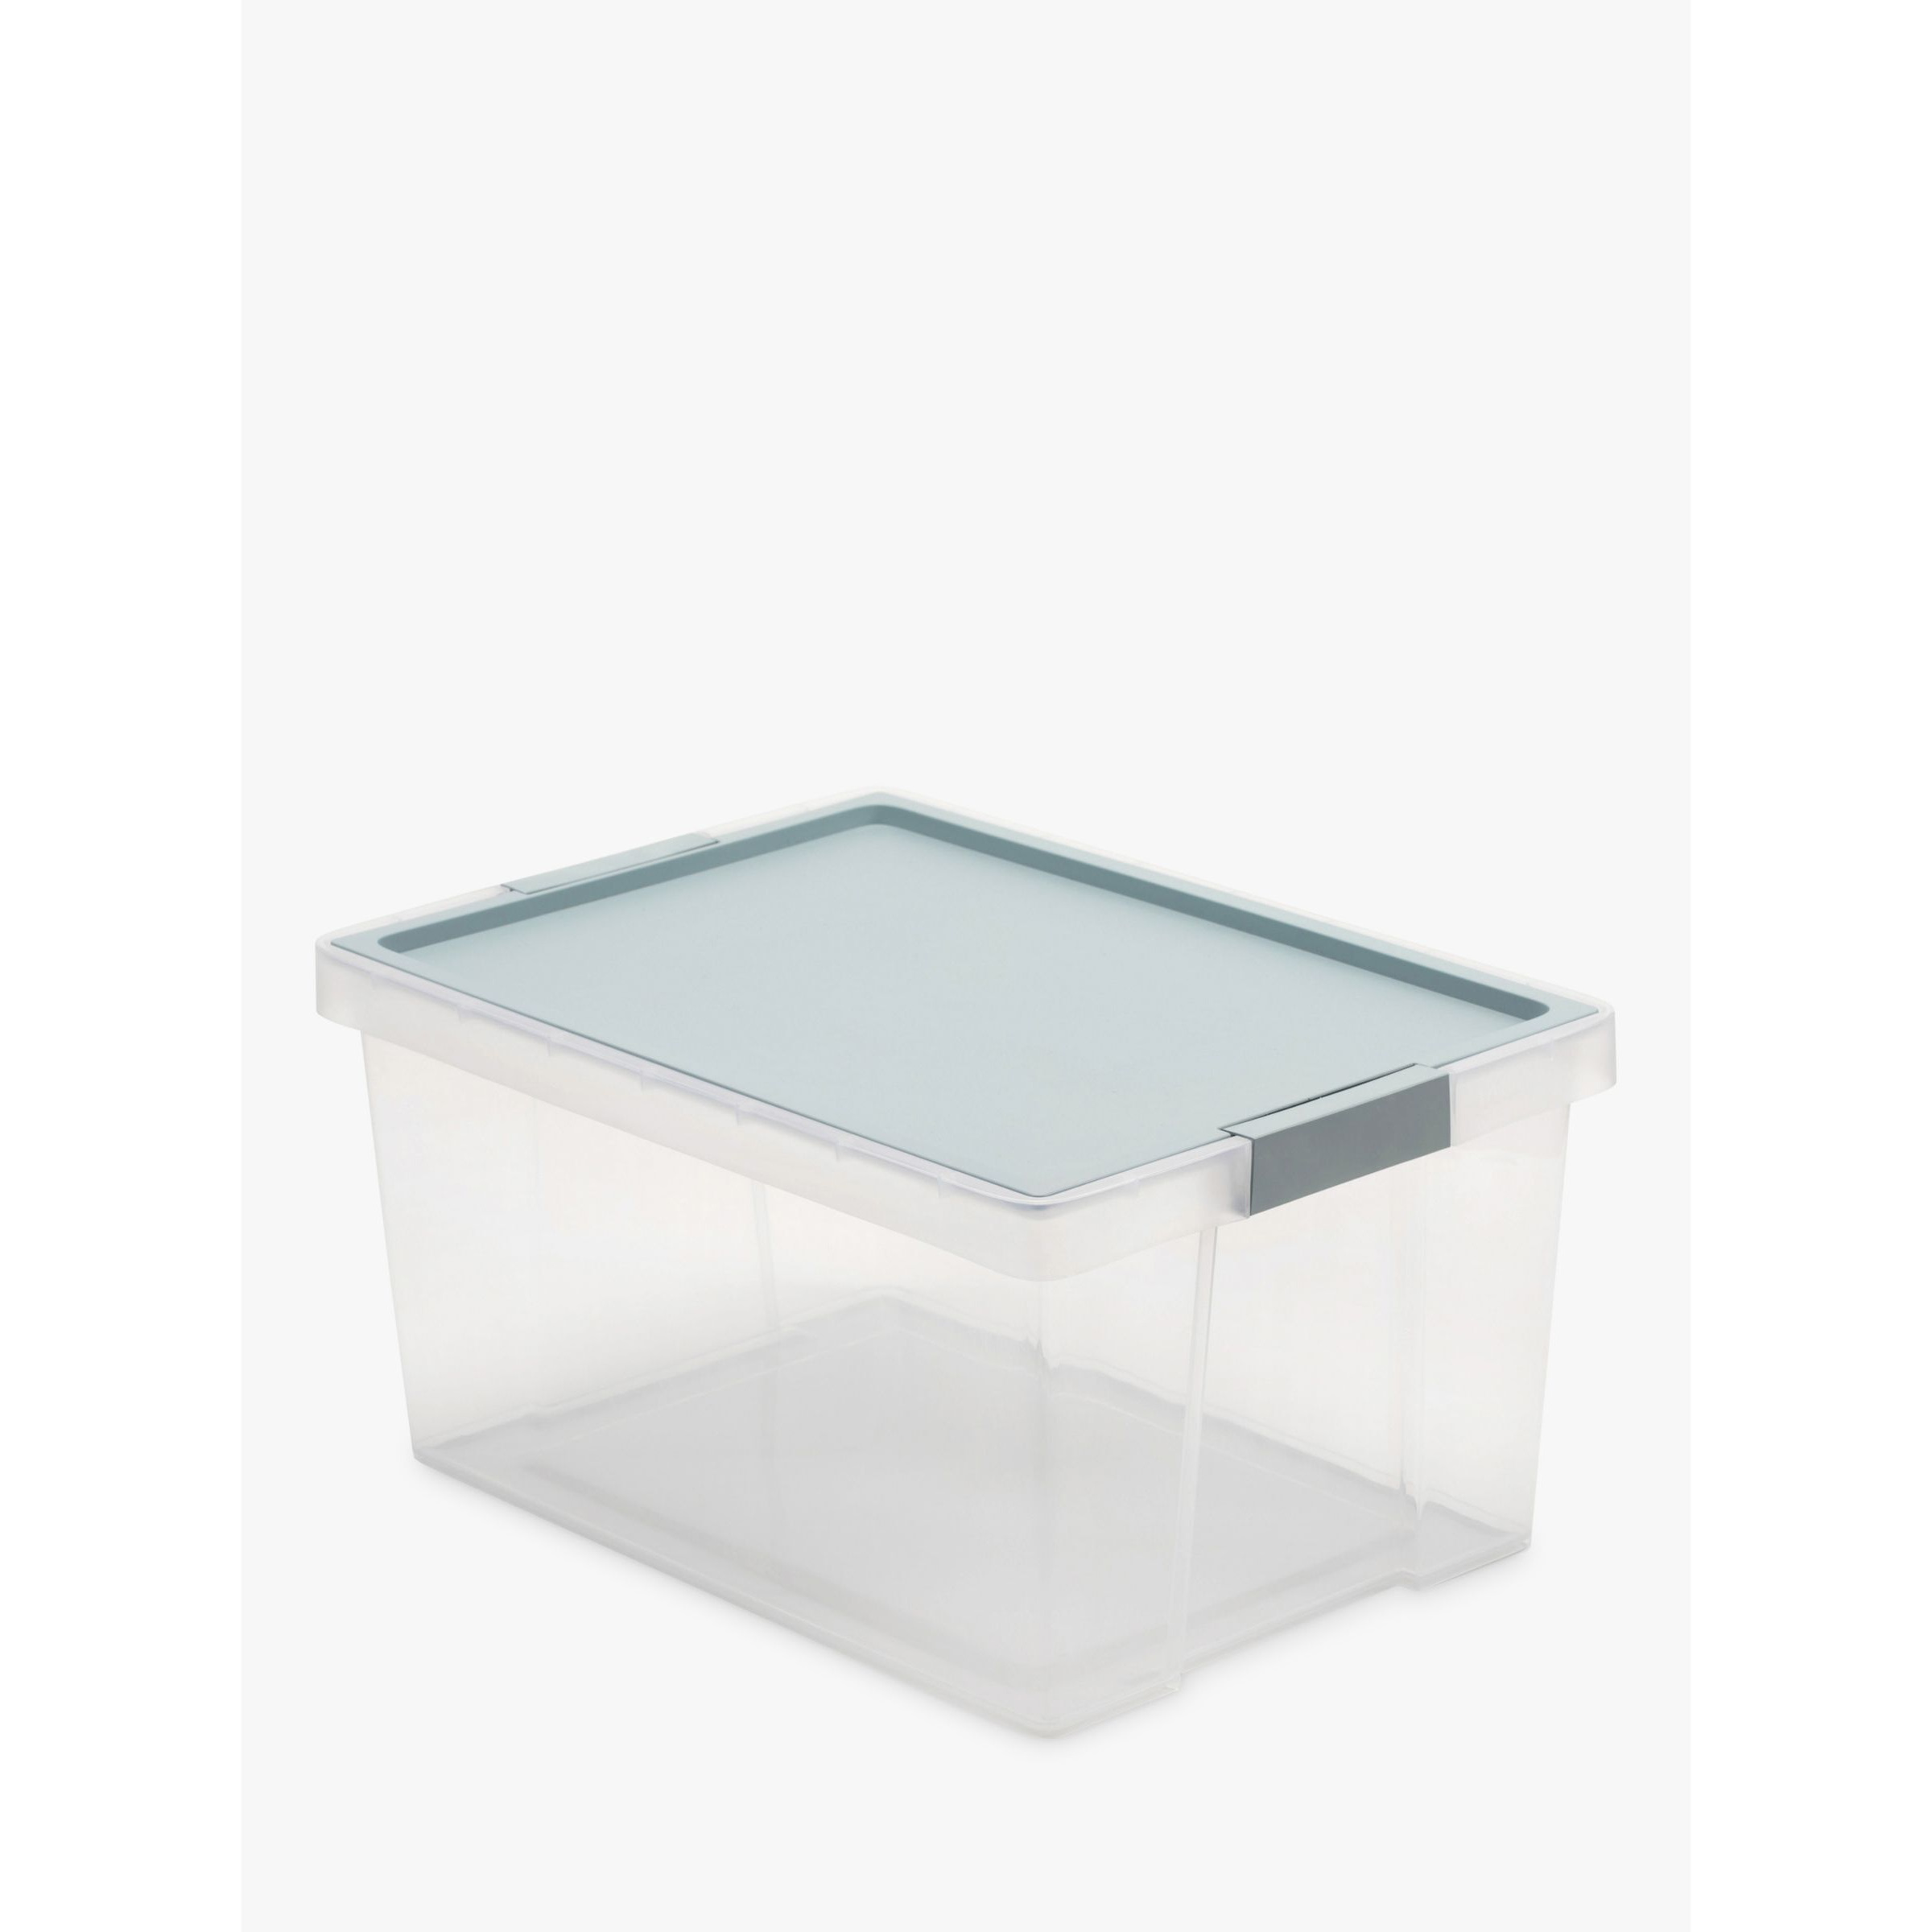 TATAY Hinge Lid Storage Box, Light Blue, 35L - image 1